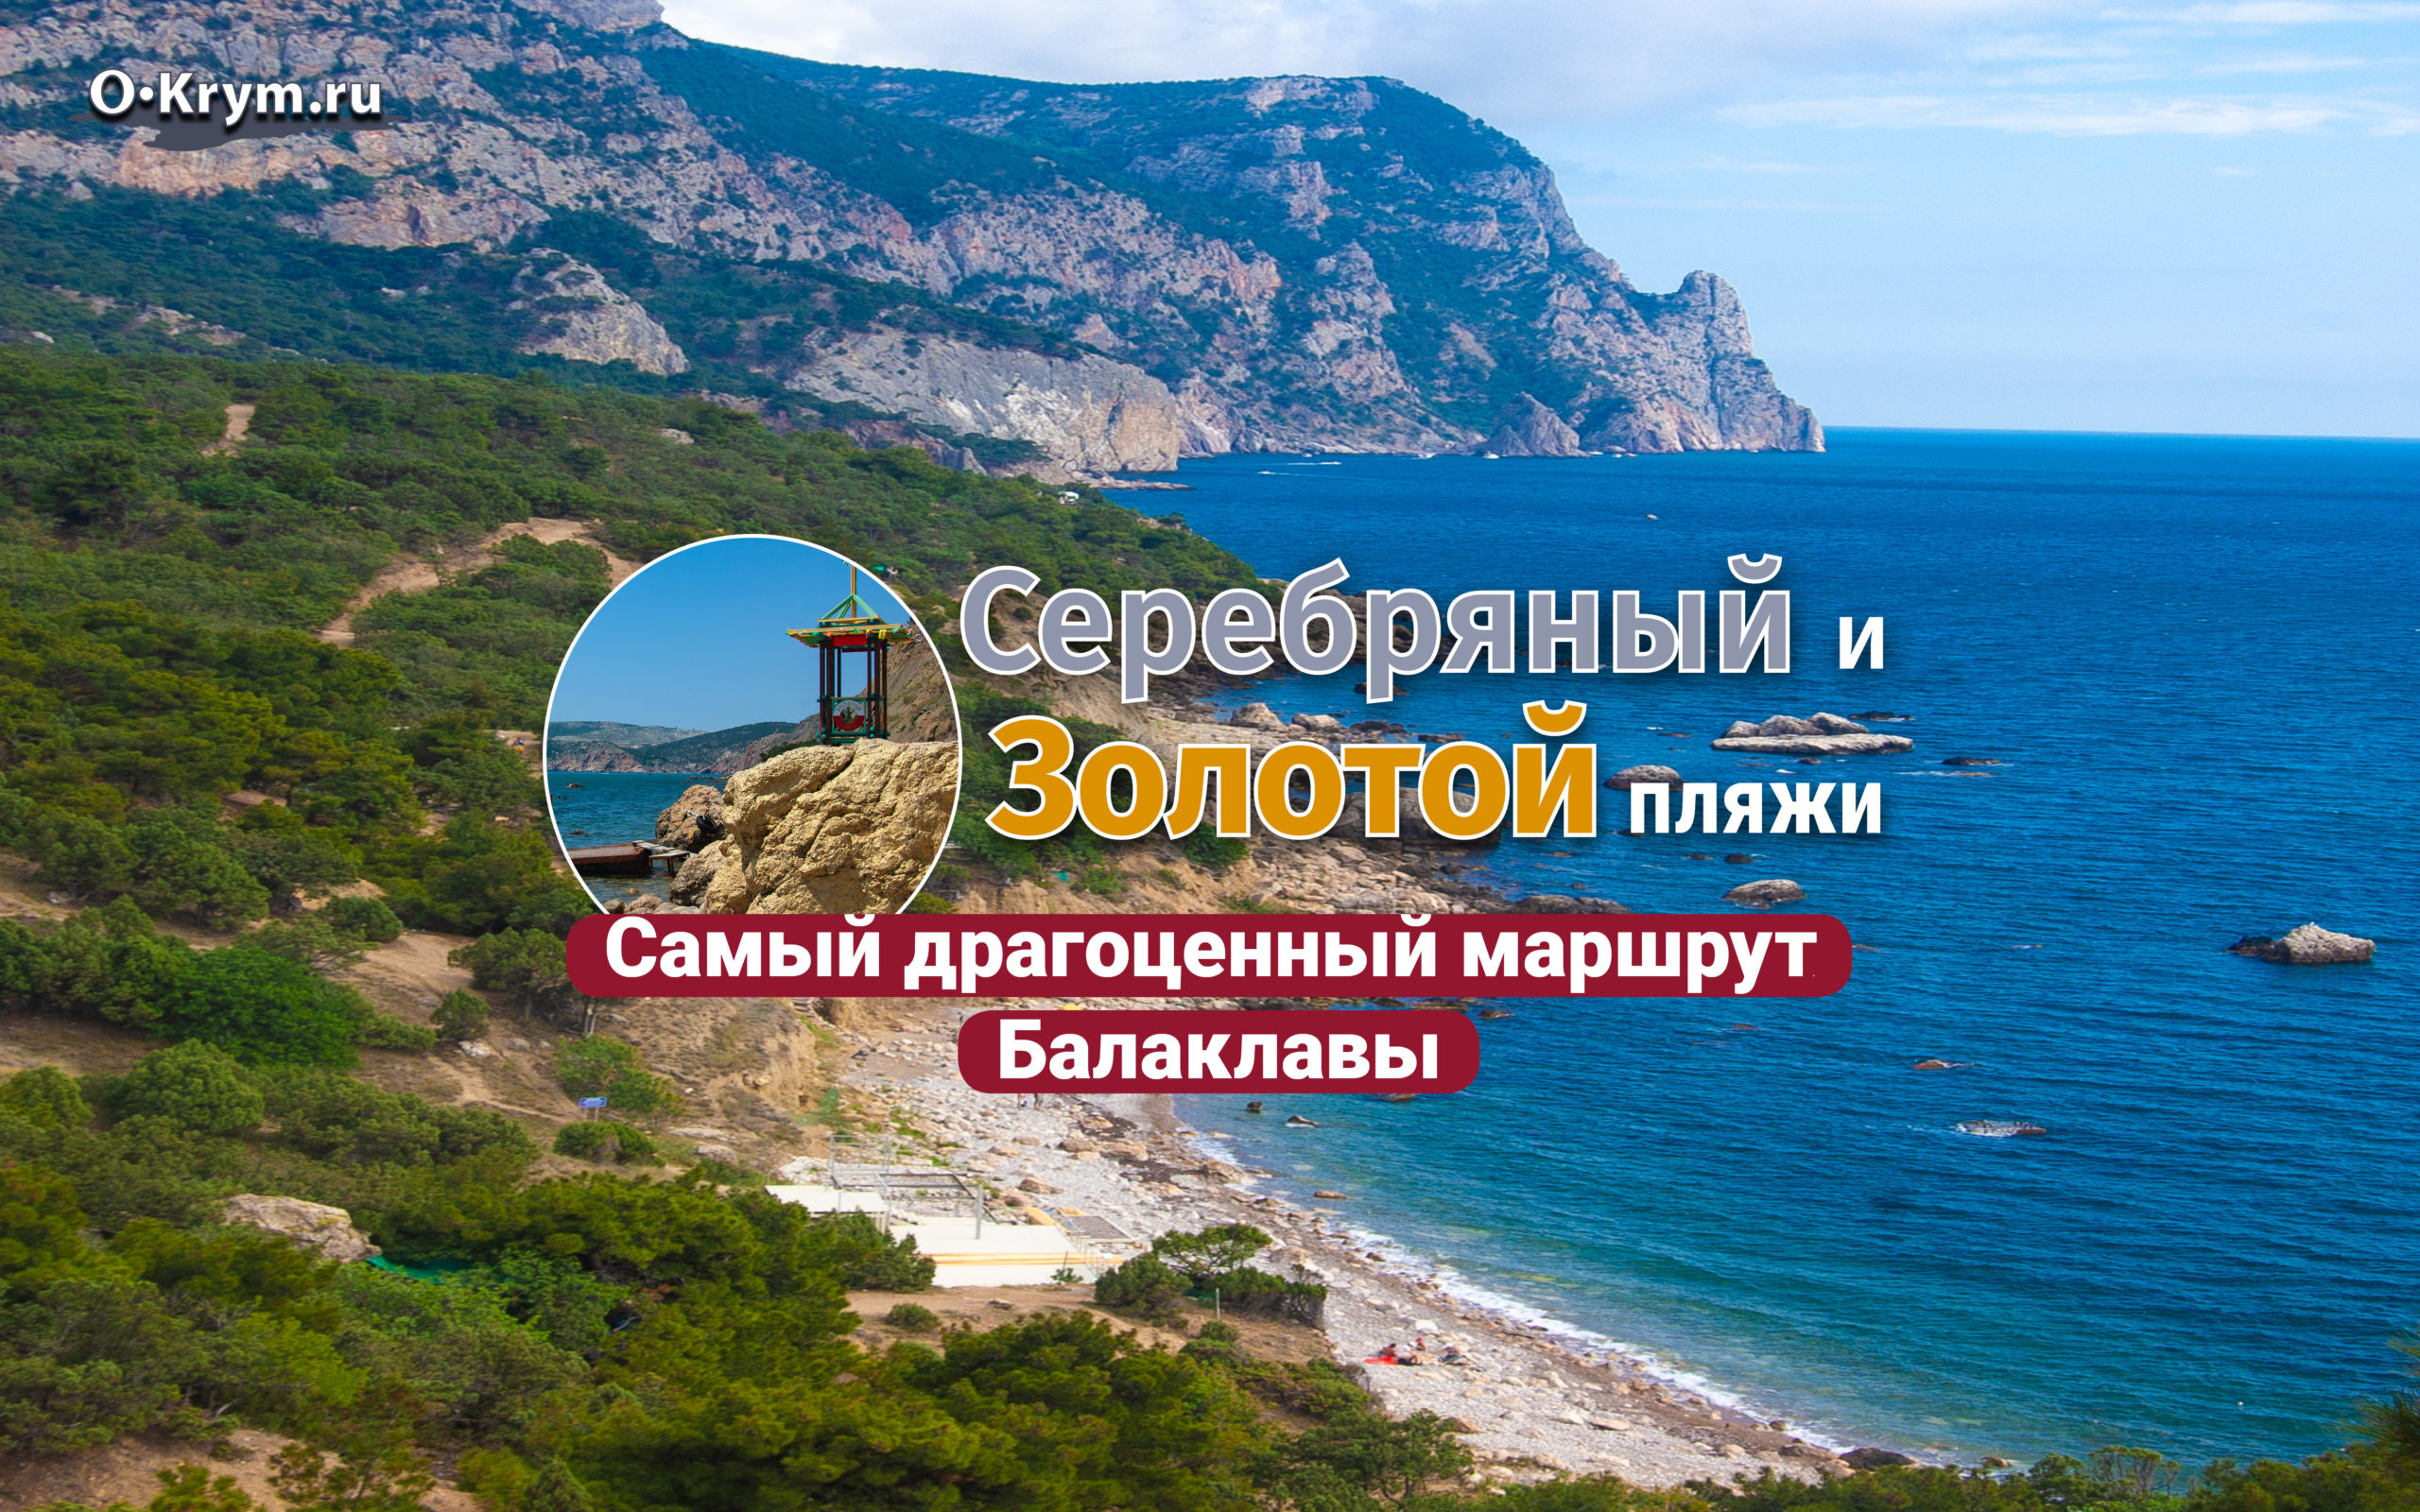 Легенда о золотом пляже Крым